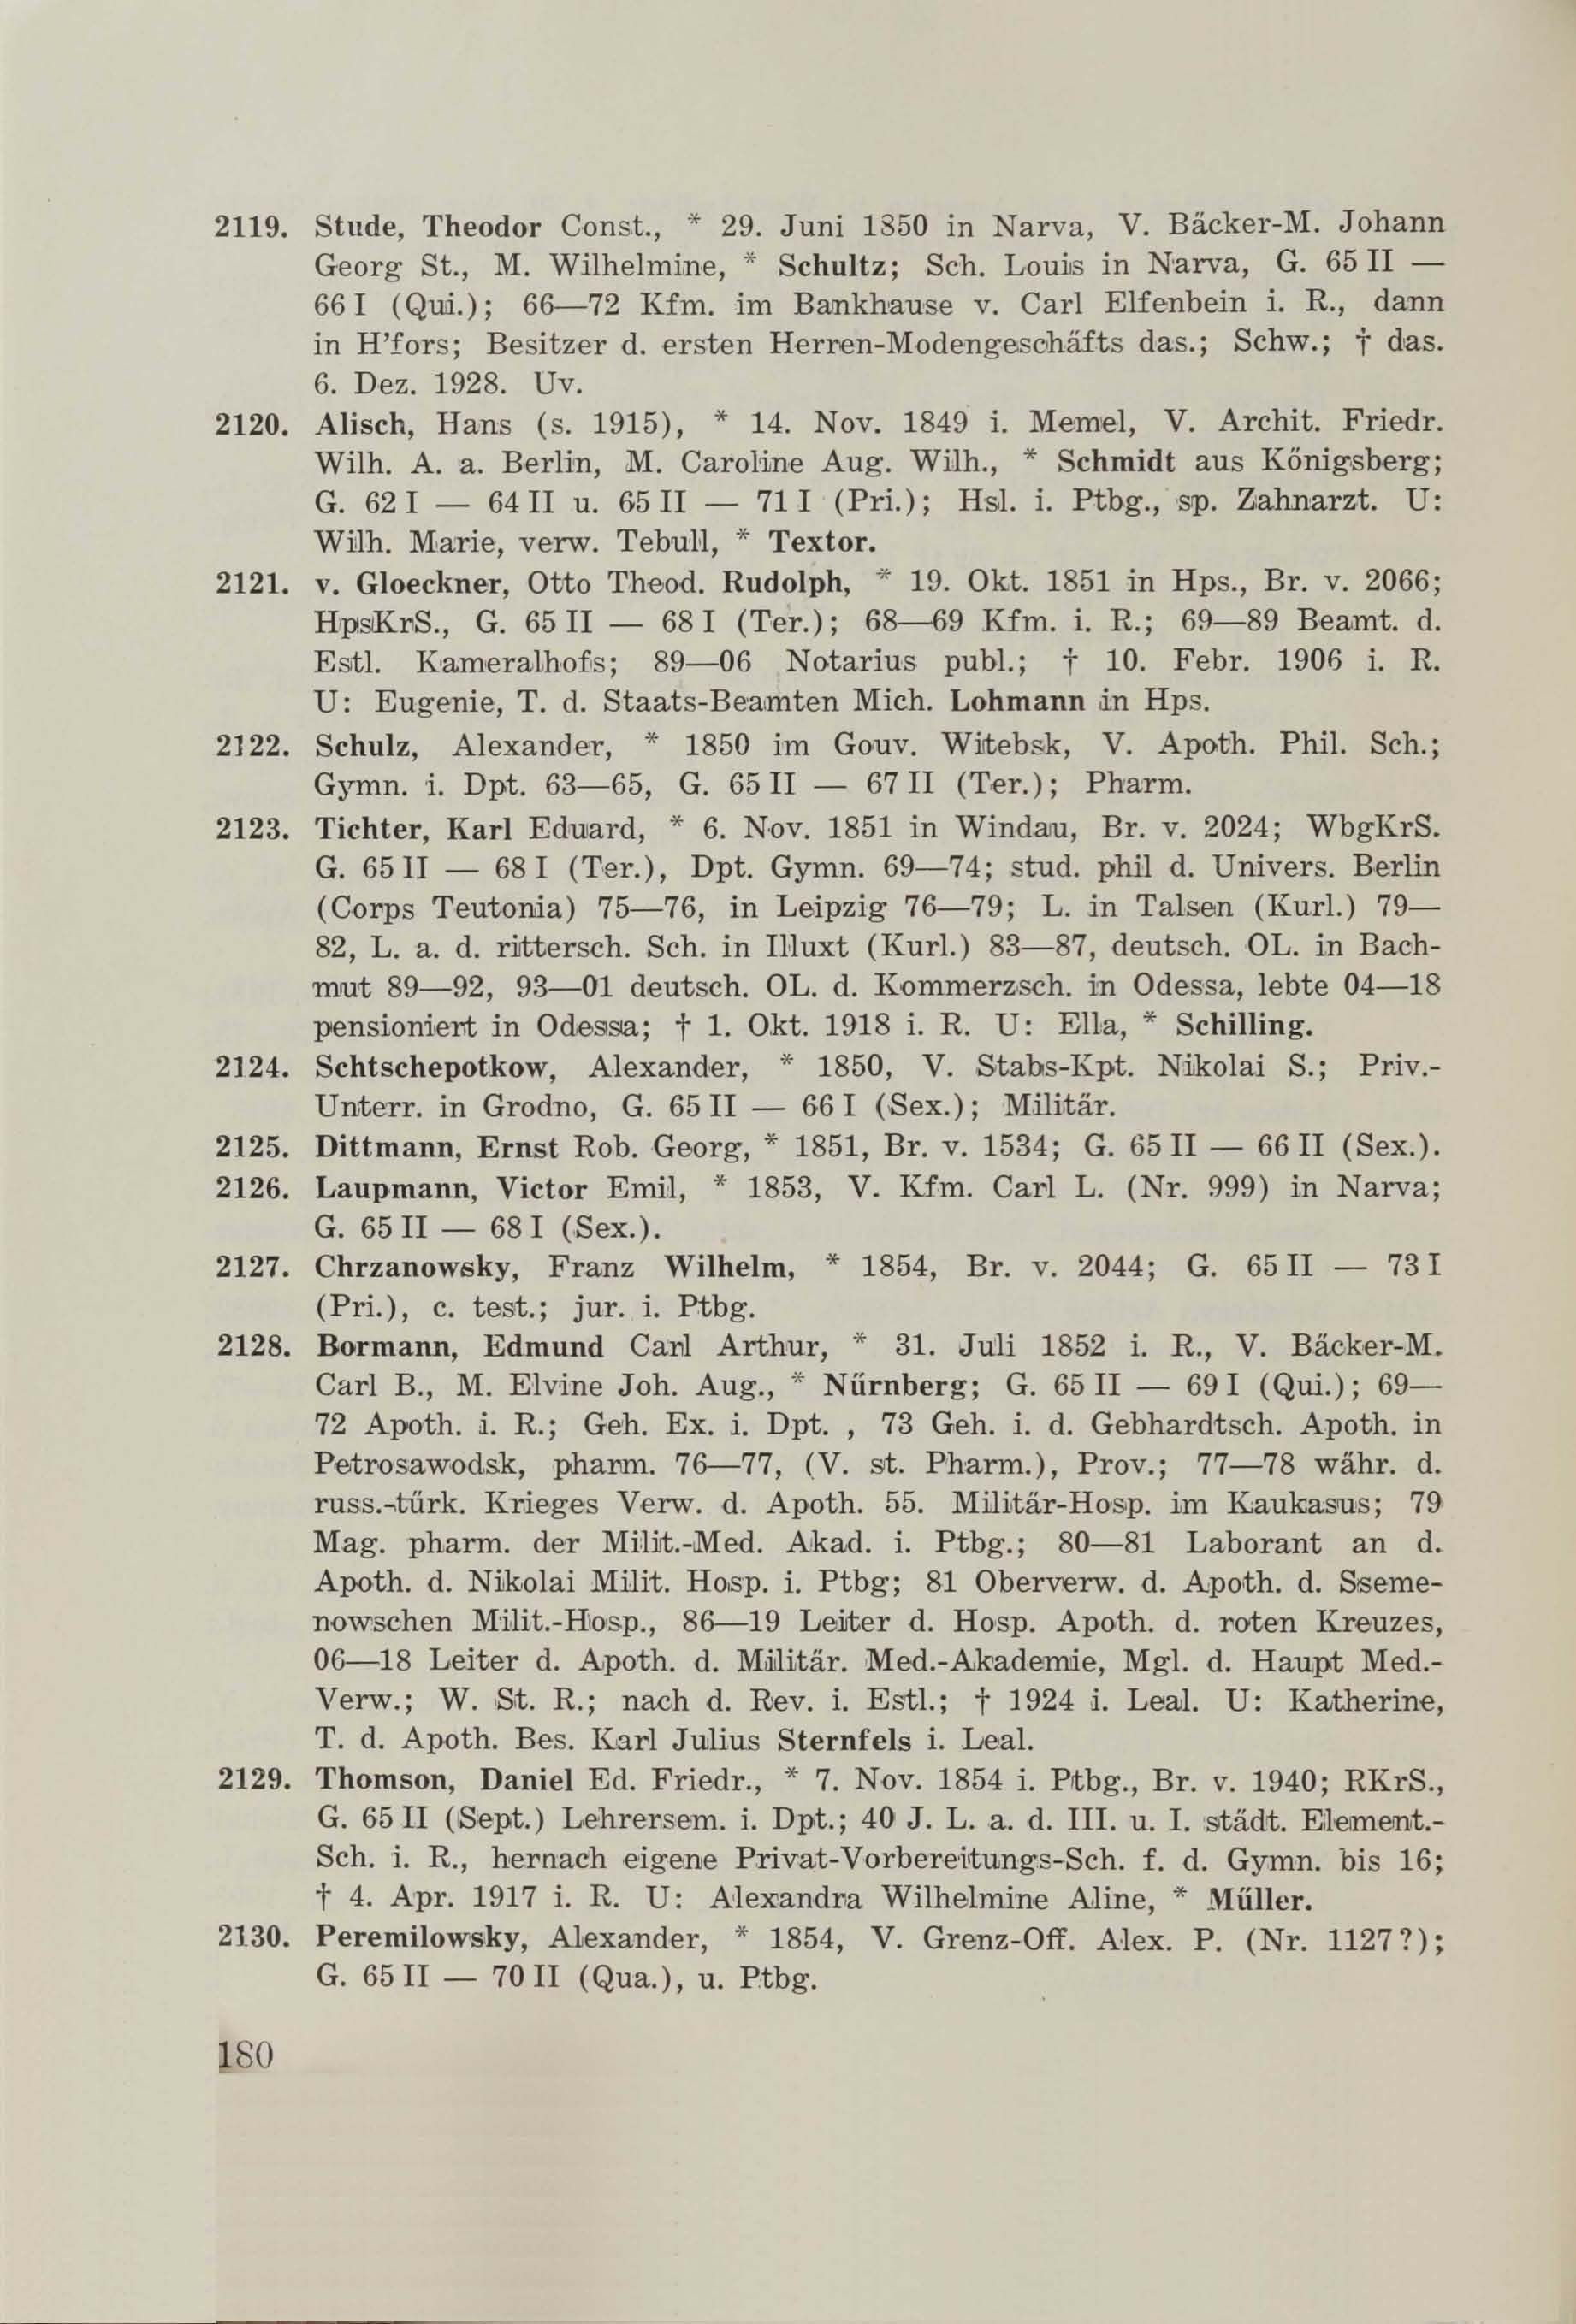 Schüler-Verzeichnis des Revalschen Gouvernements-Gymnasiums 1805–1890 (1931) | 190. (180) Main body of text